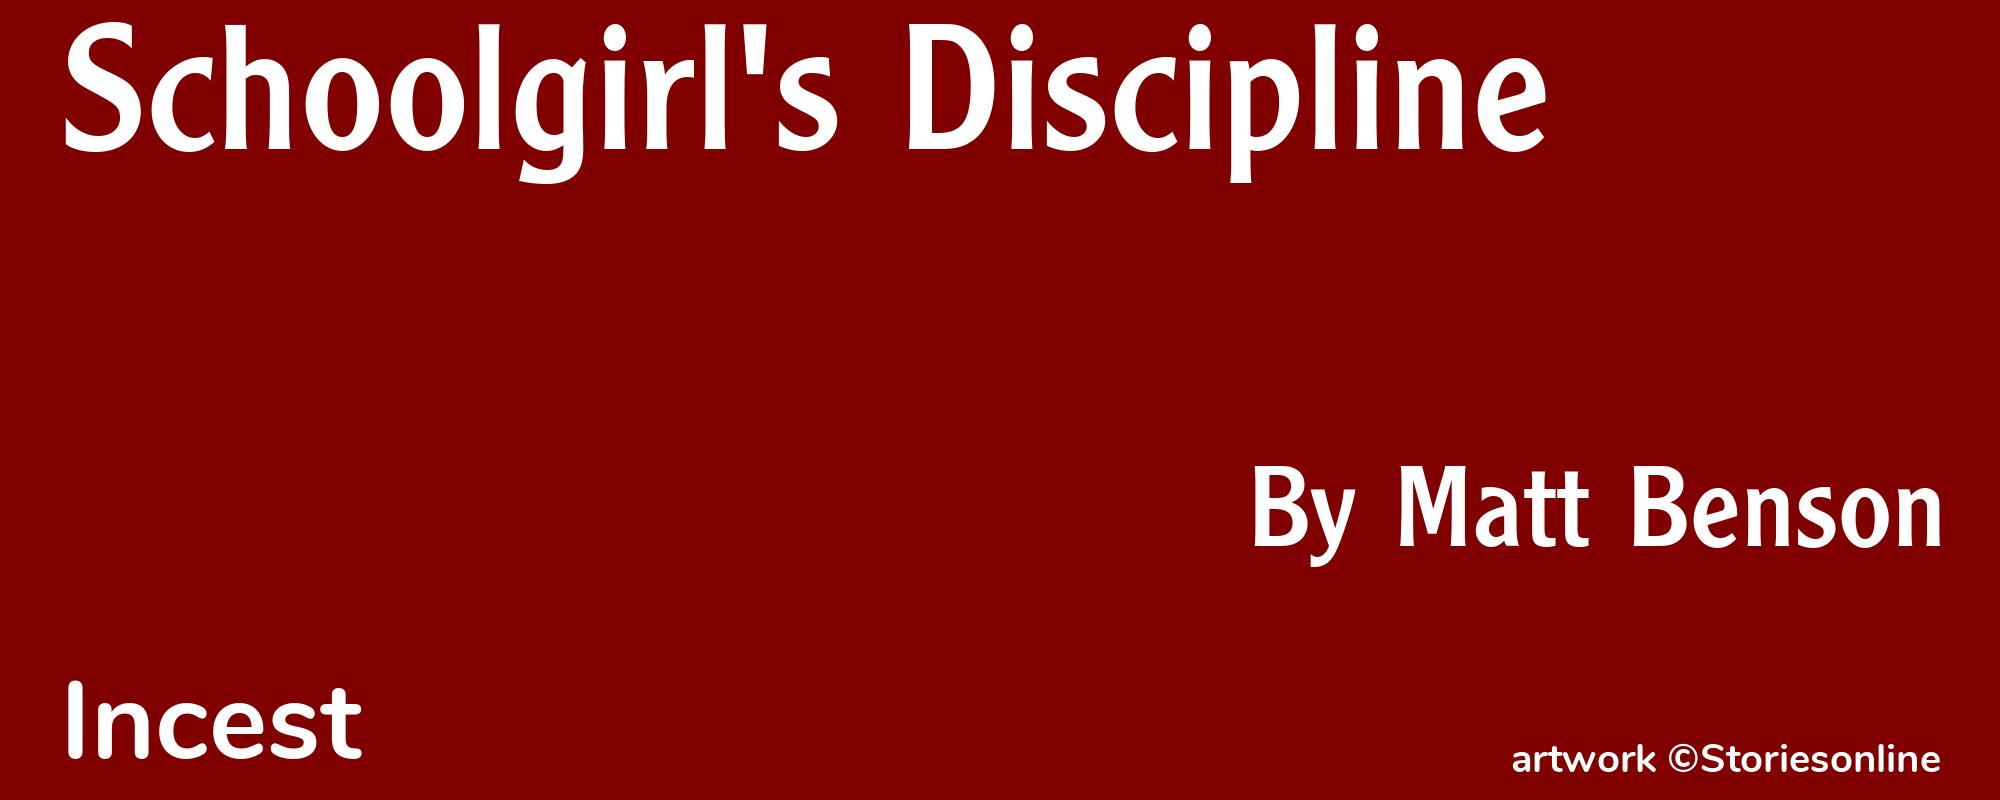 Schoolgirl's Discipline - Cover